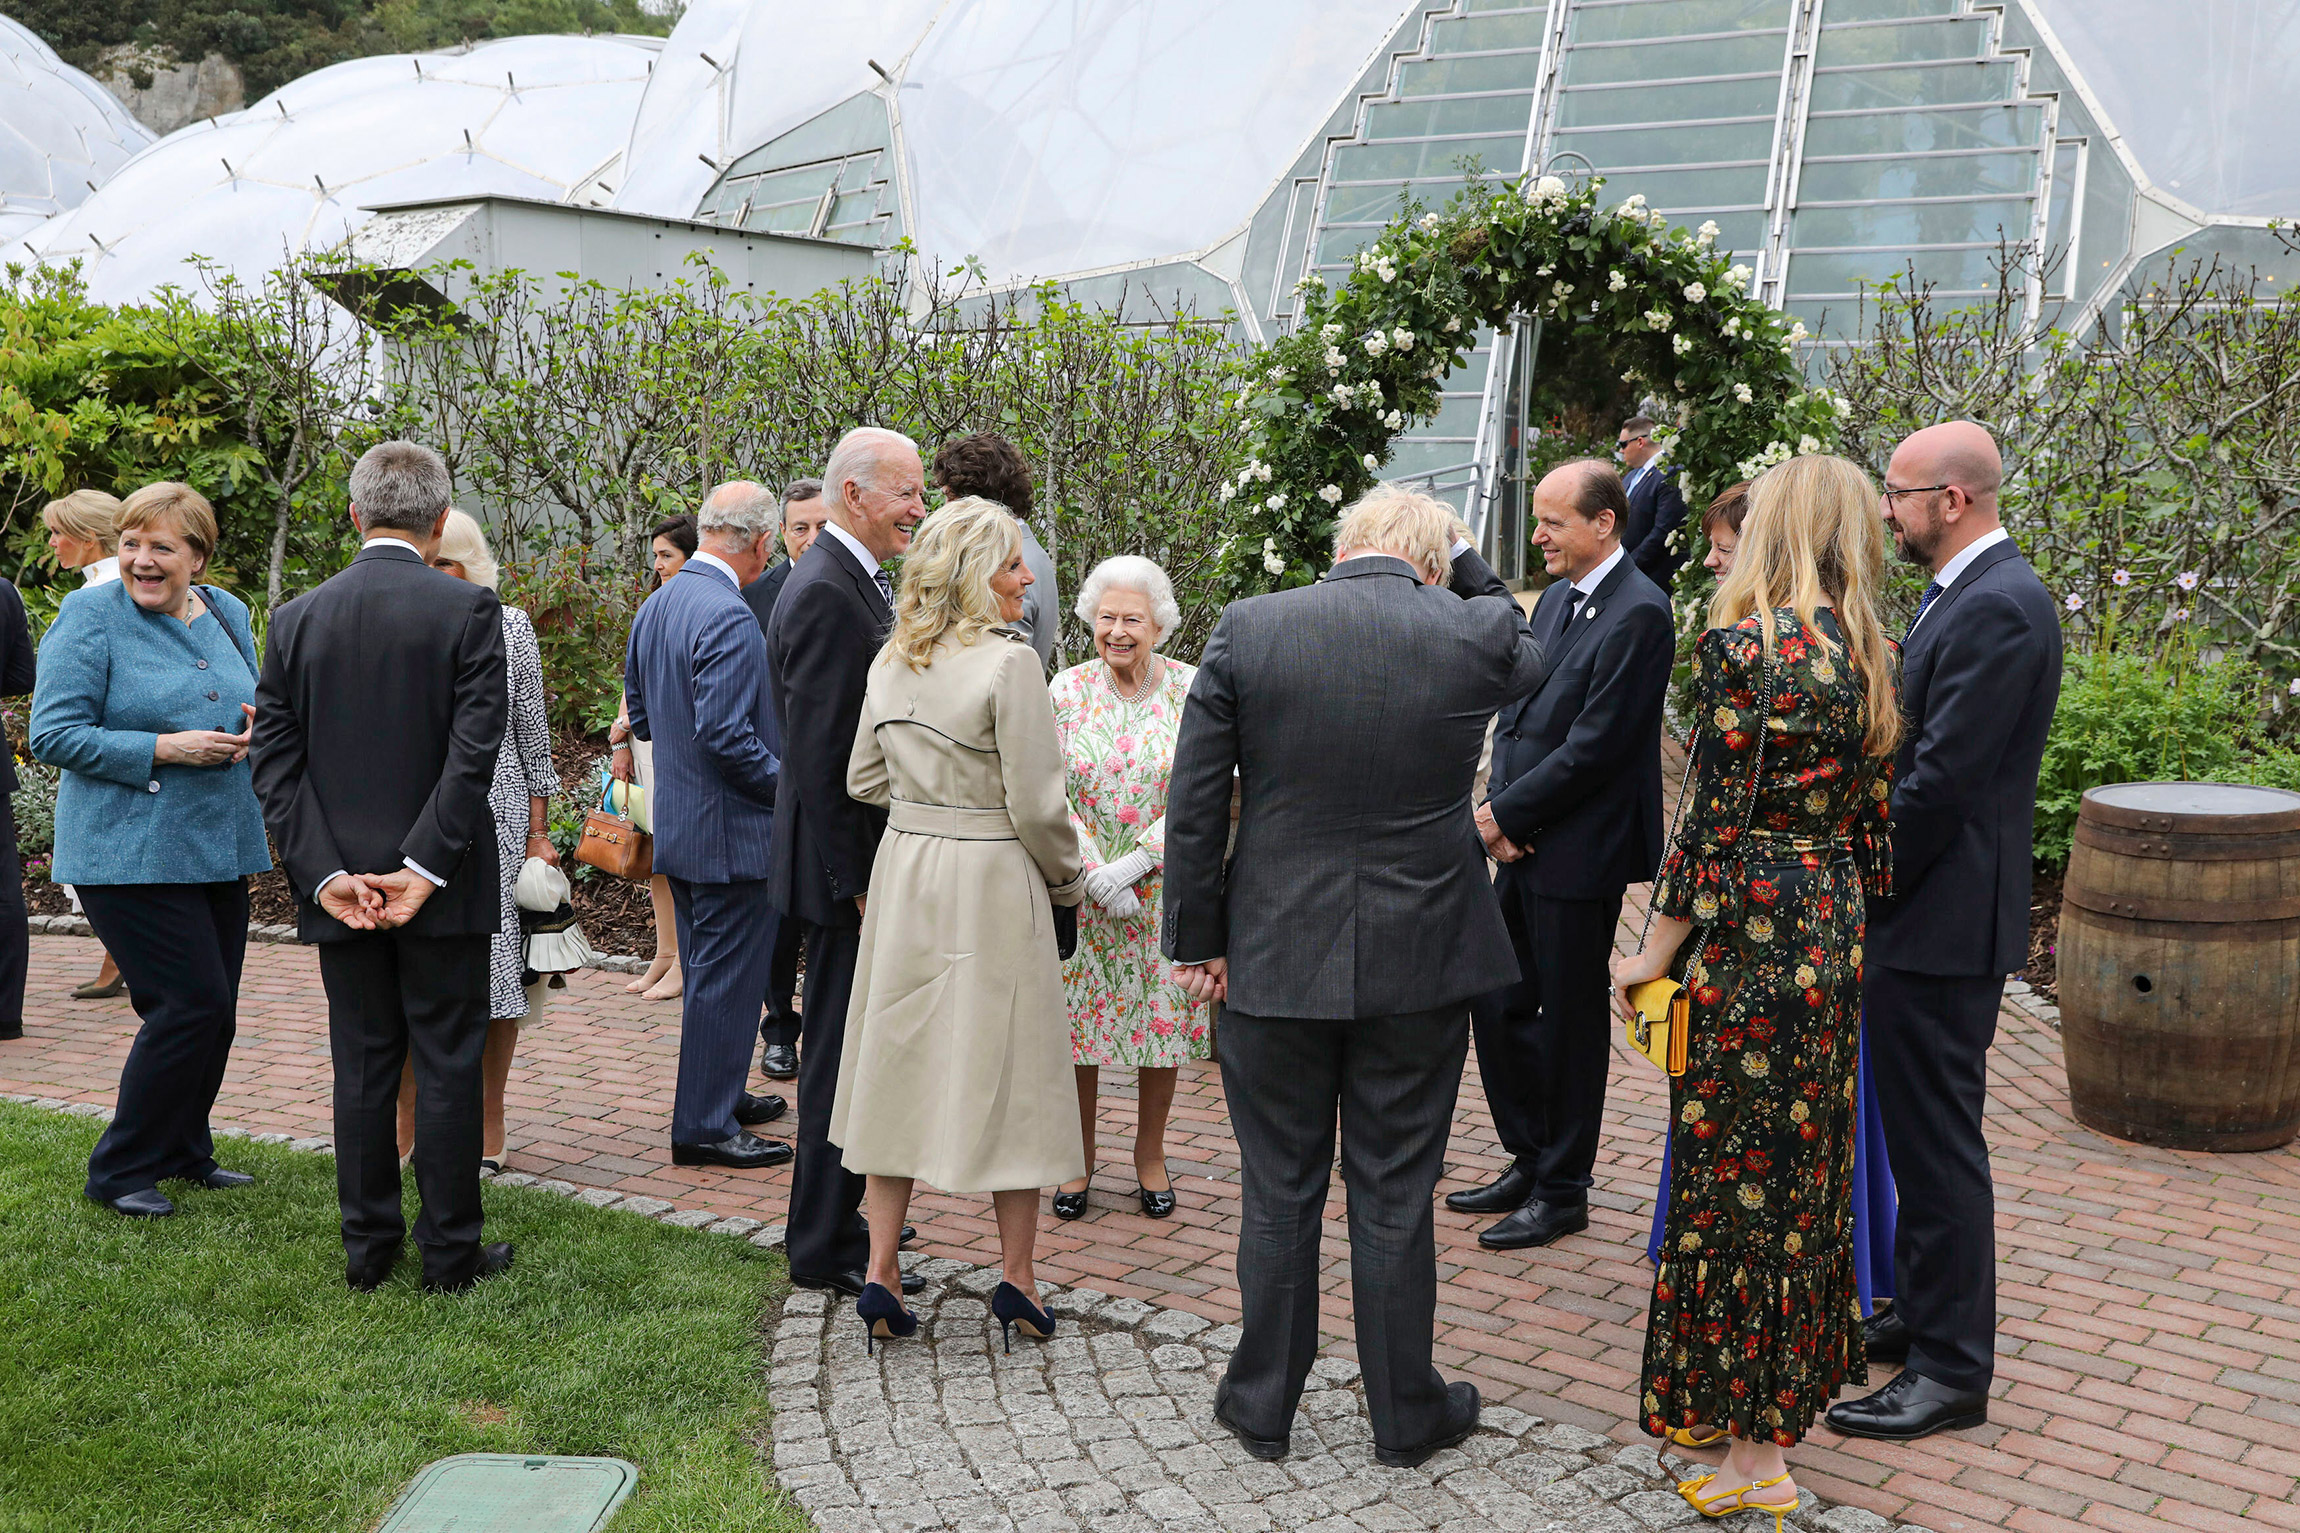 В центре: Елизавета II беседует с президентом США Джо Байденом и американской первой леди Джилл Байден на приеме для лидеров G7 в проекте &laquo;Эдем&raquo;&nbsp;&mdash; ботаническом саду в Корнуолле, 11 июня 2021 года